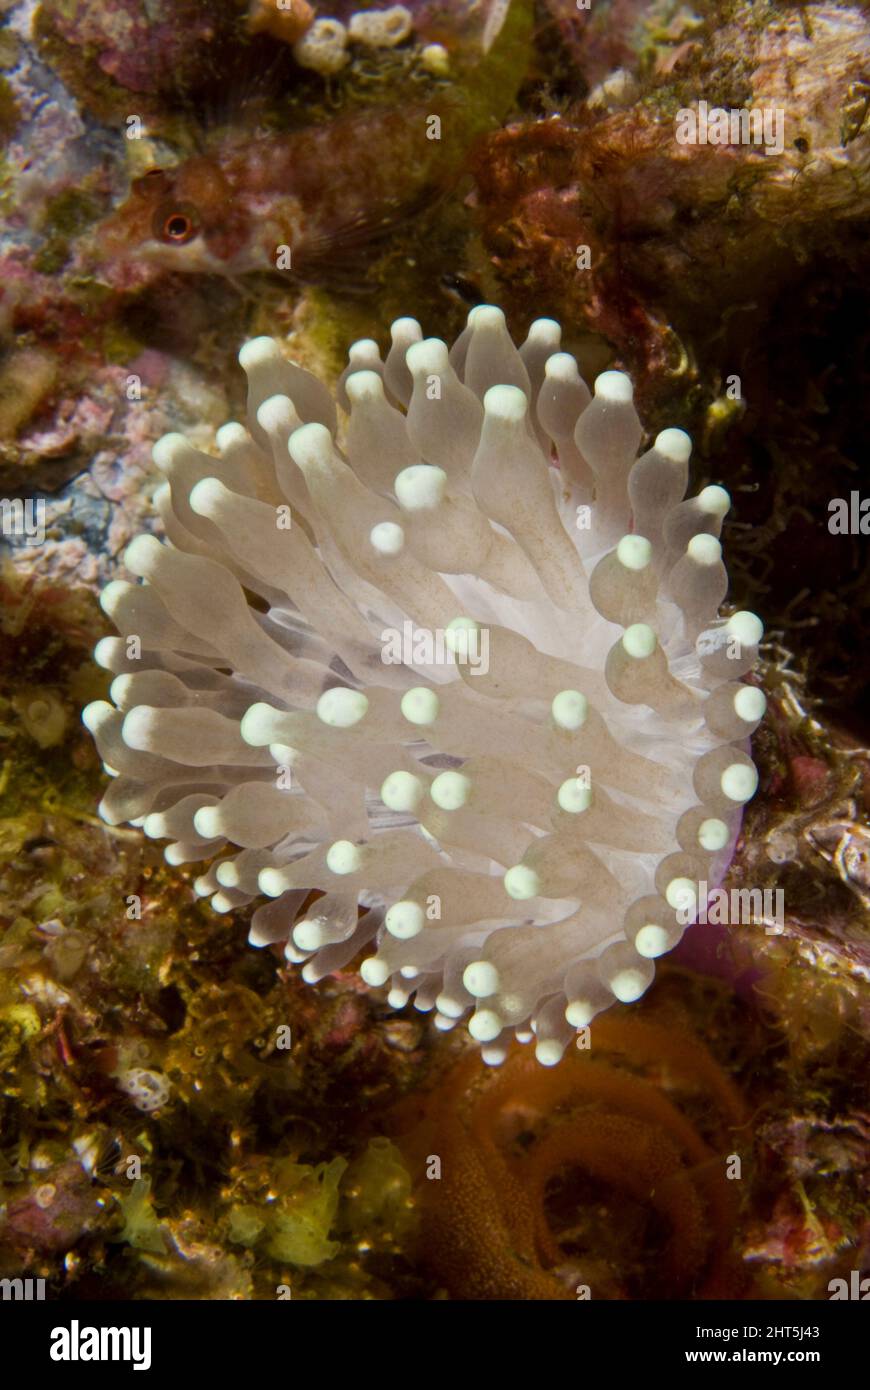 Bolla punta anemone (Entachmaea quadricolor), un corallo solitario che sembra molto simile ad un anemone, tuttavia ha uno scheletro duro. Foto Stock